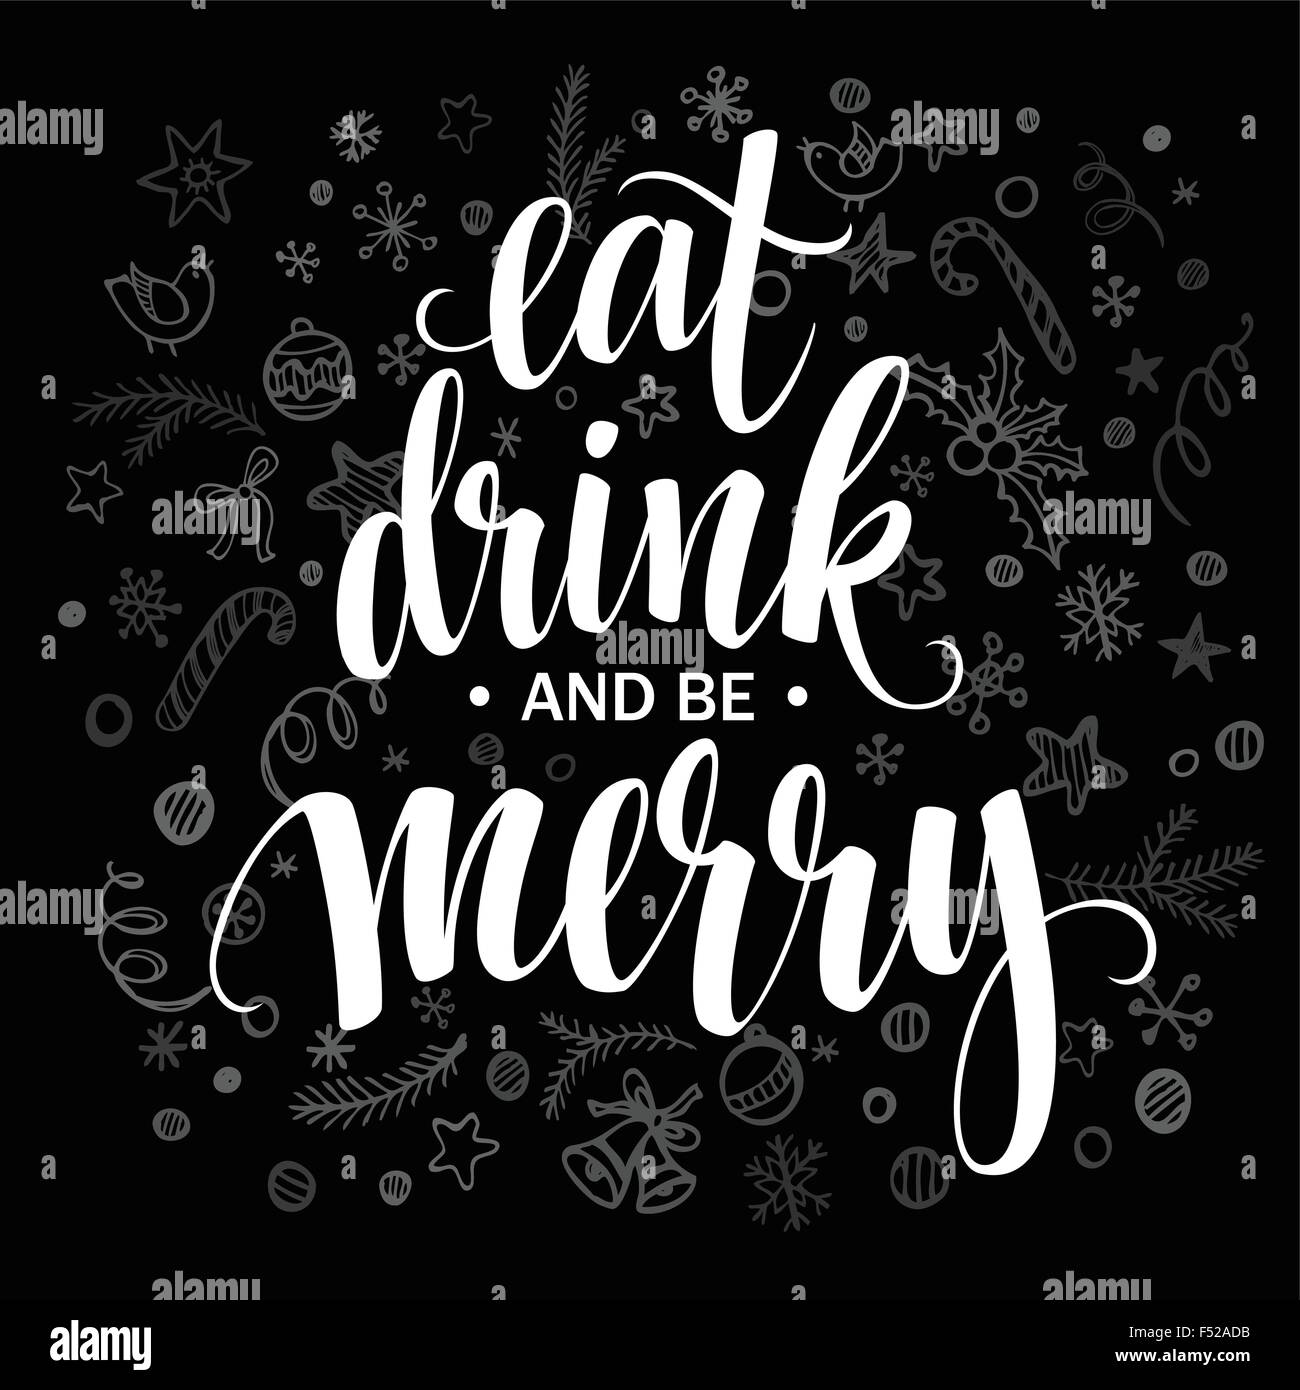 Plakat-Schriftzug Essen trinken und fröhlich sein. Vektor-illustration Stock Vektor